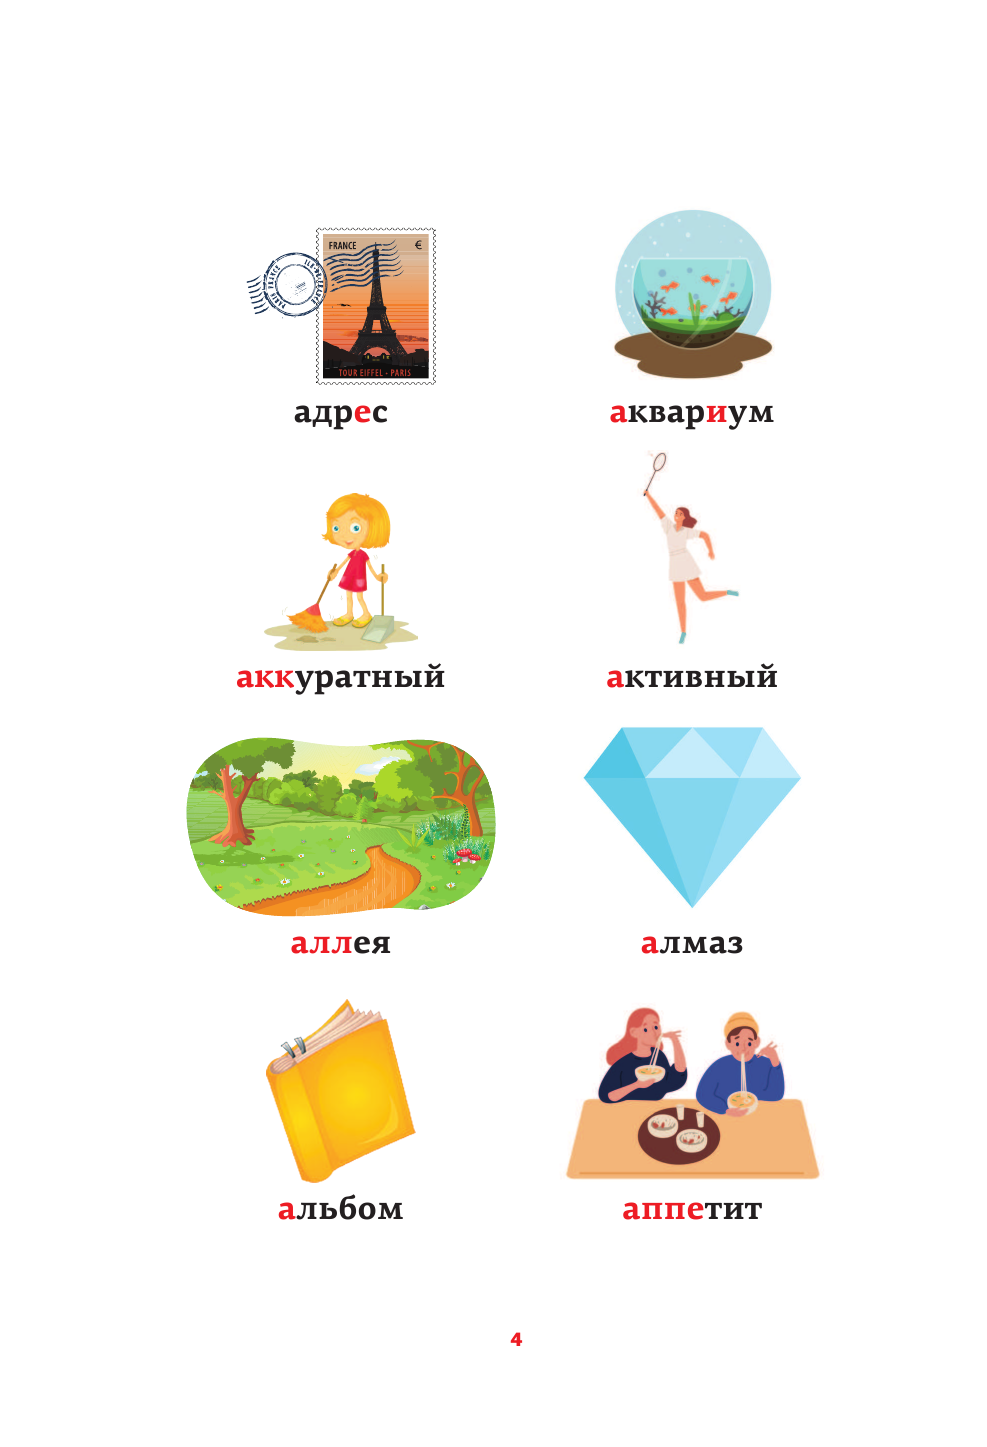  Русский язык: все словарные слова в одной книге - страница 3